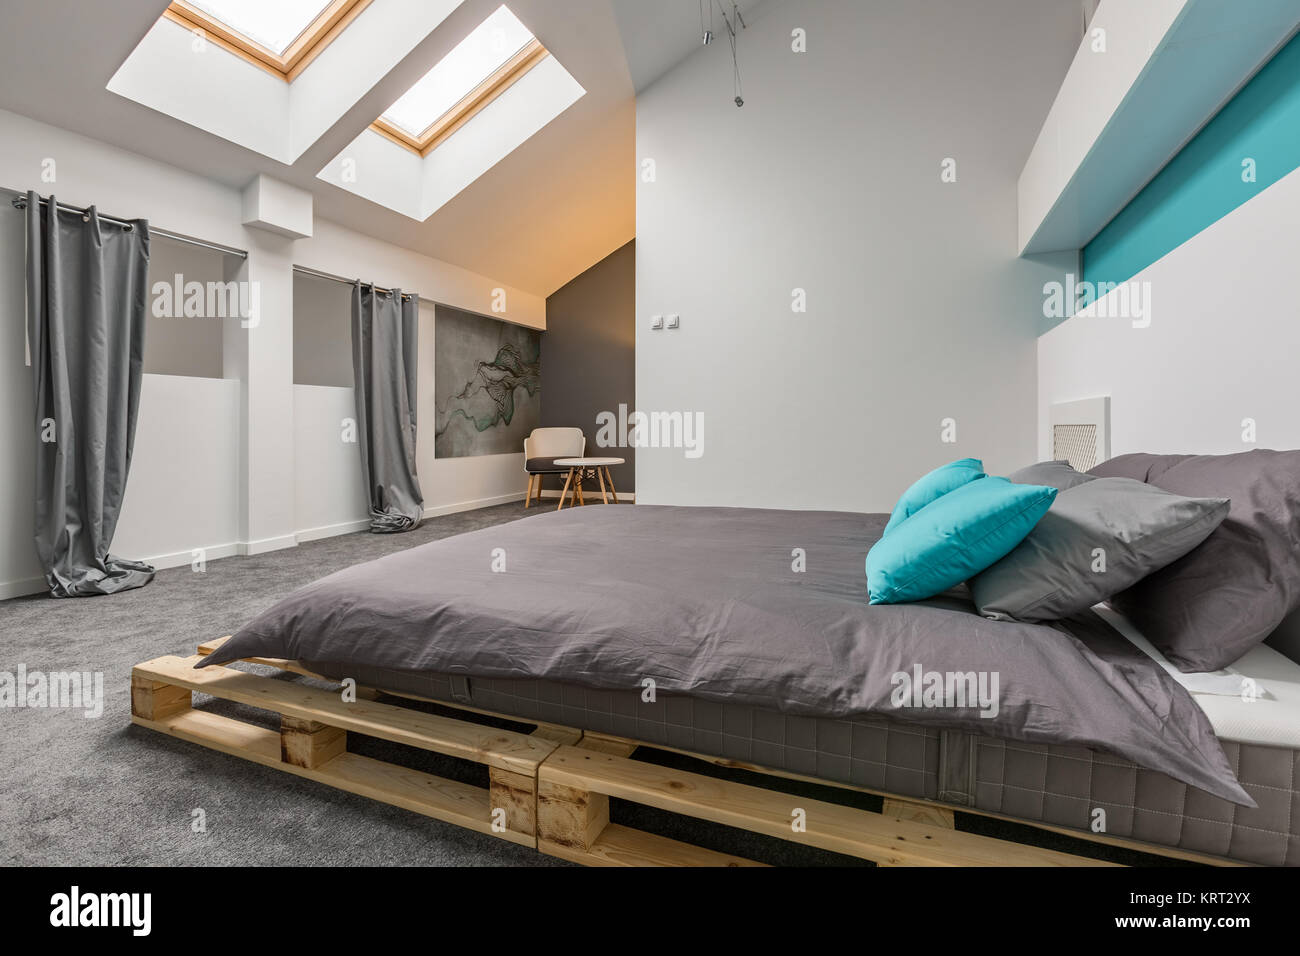 Semplice camera mansardata con pallet diy bed e finestre a soffitto Foto Stock